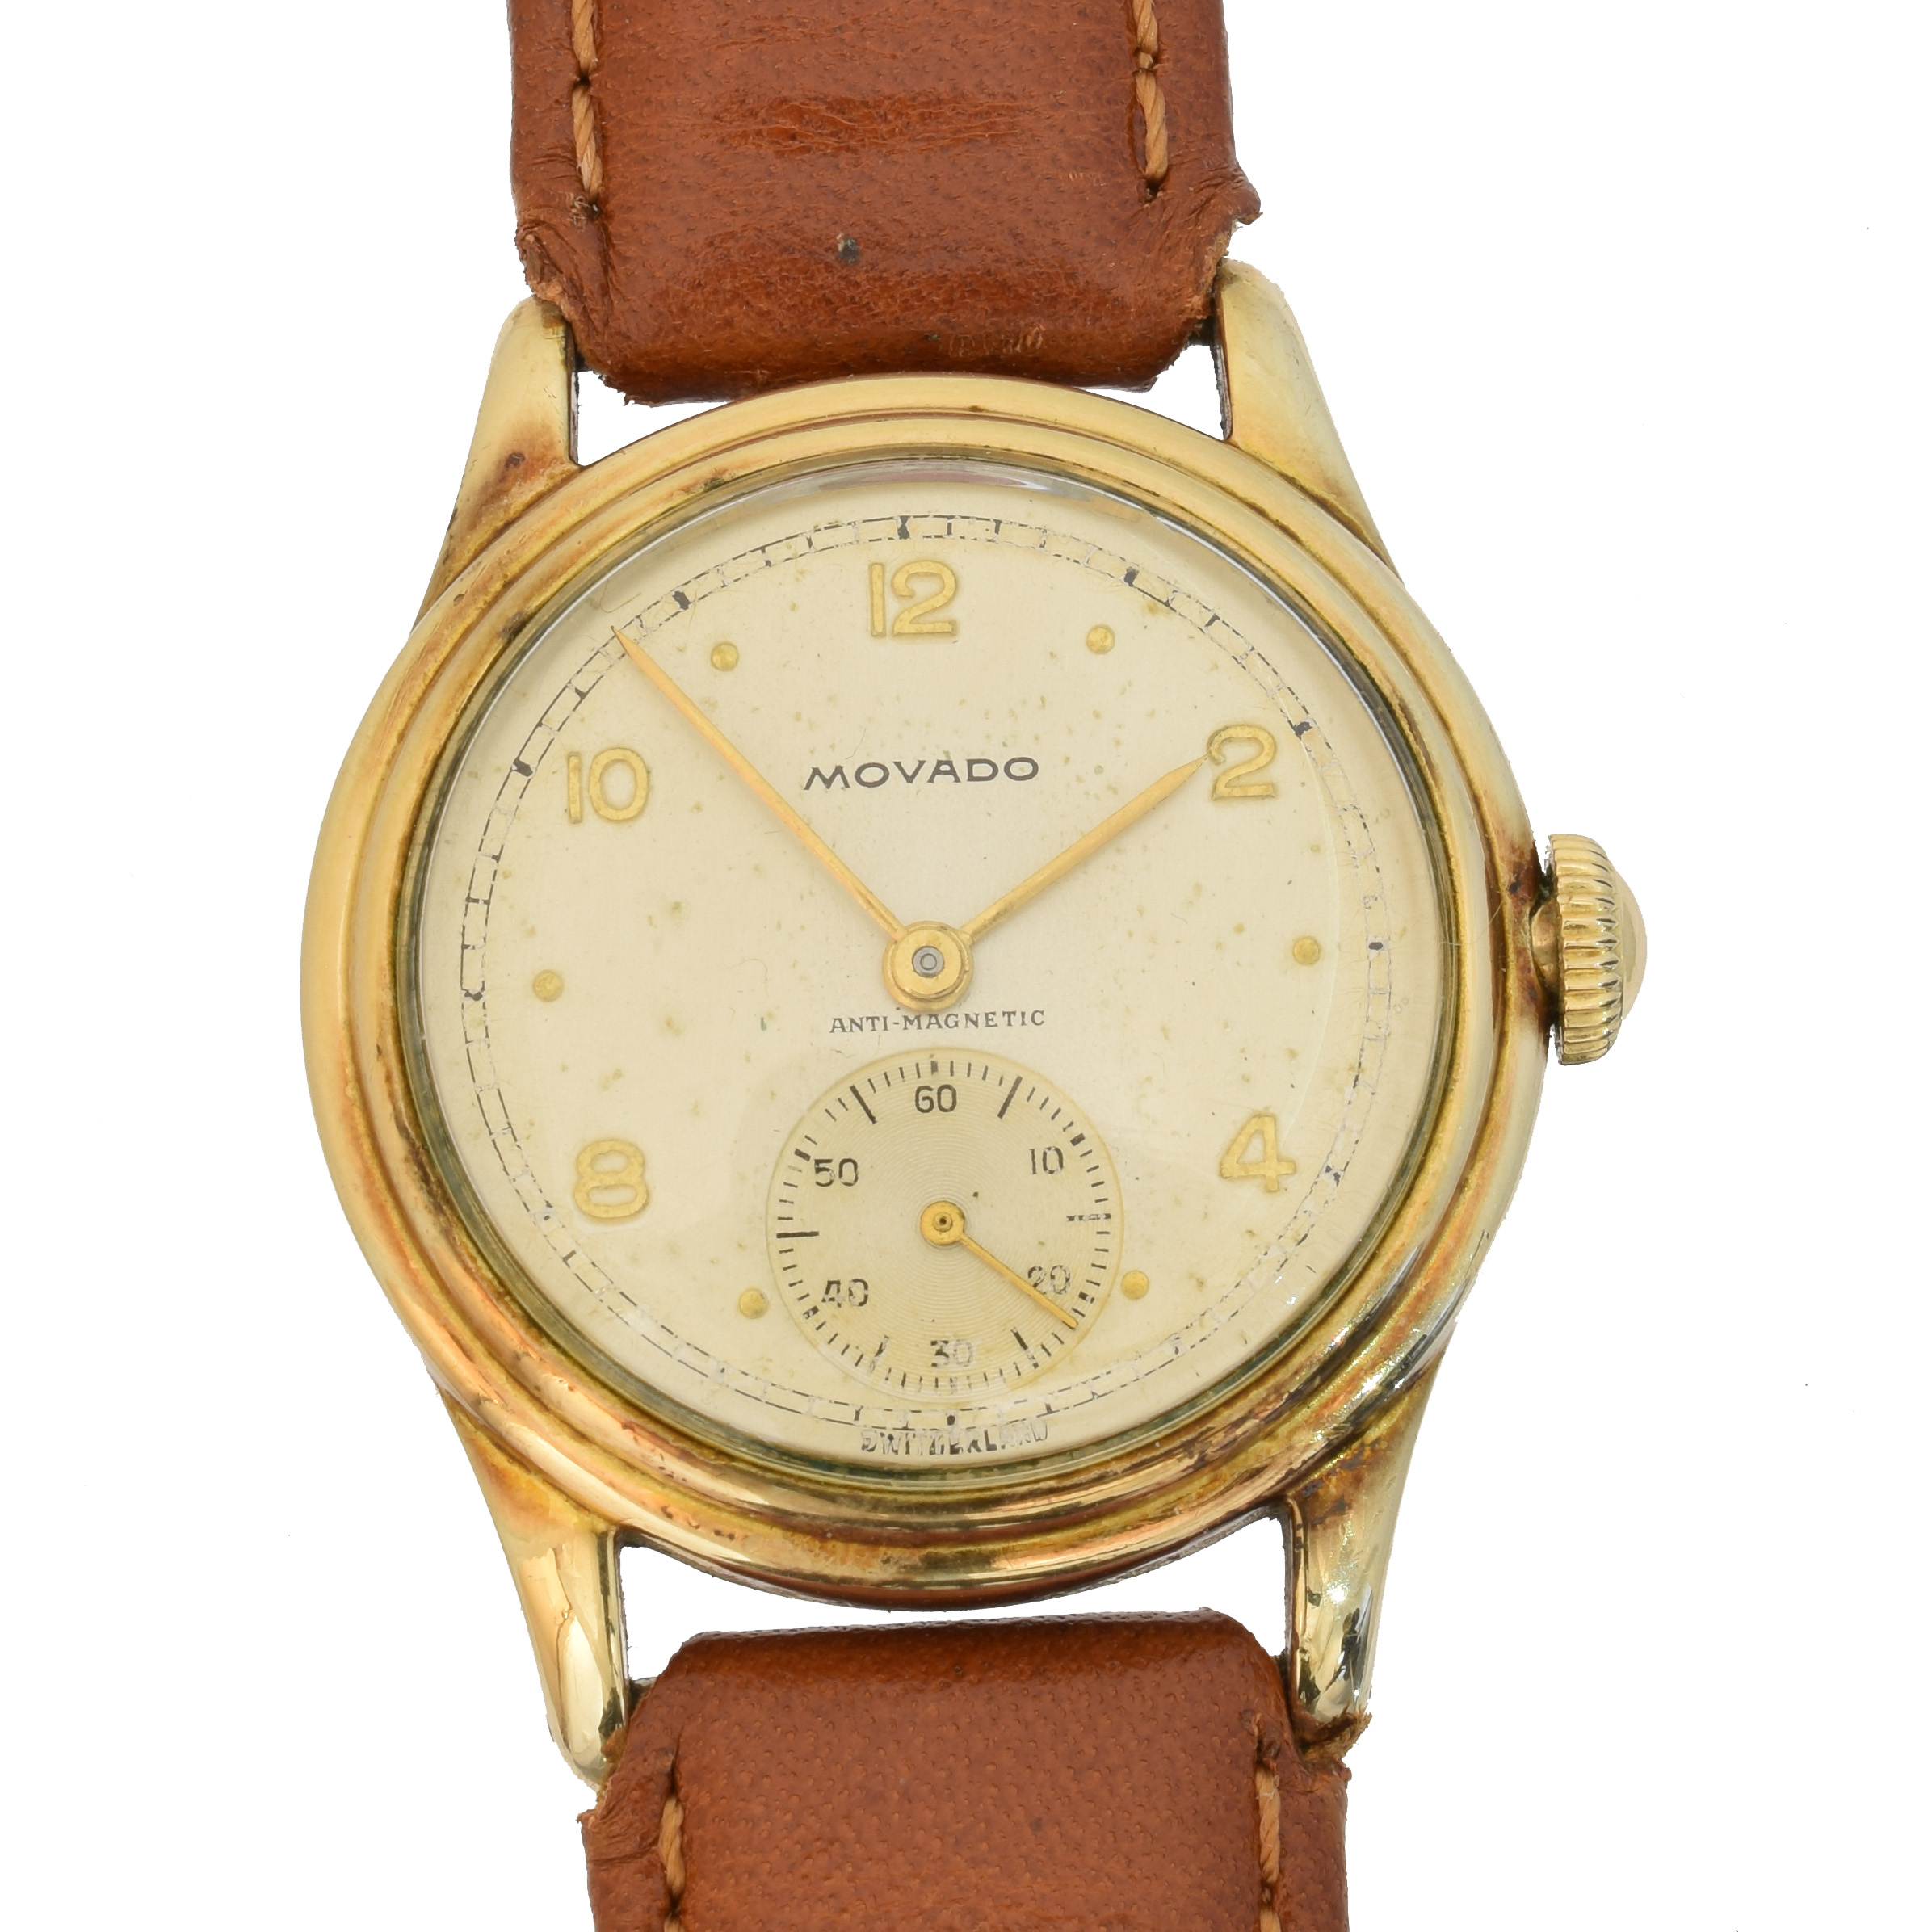 Movado wristwatch